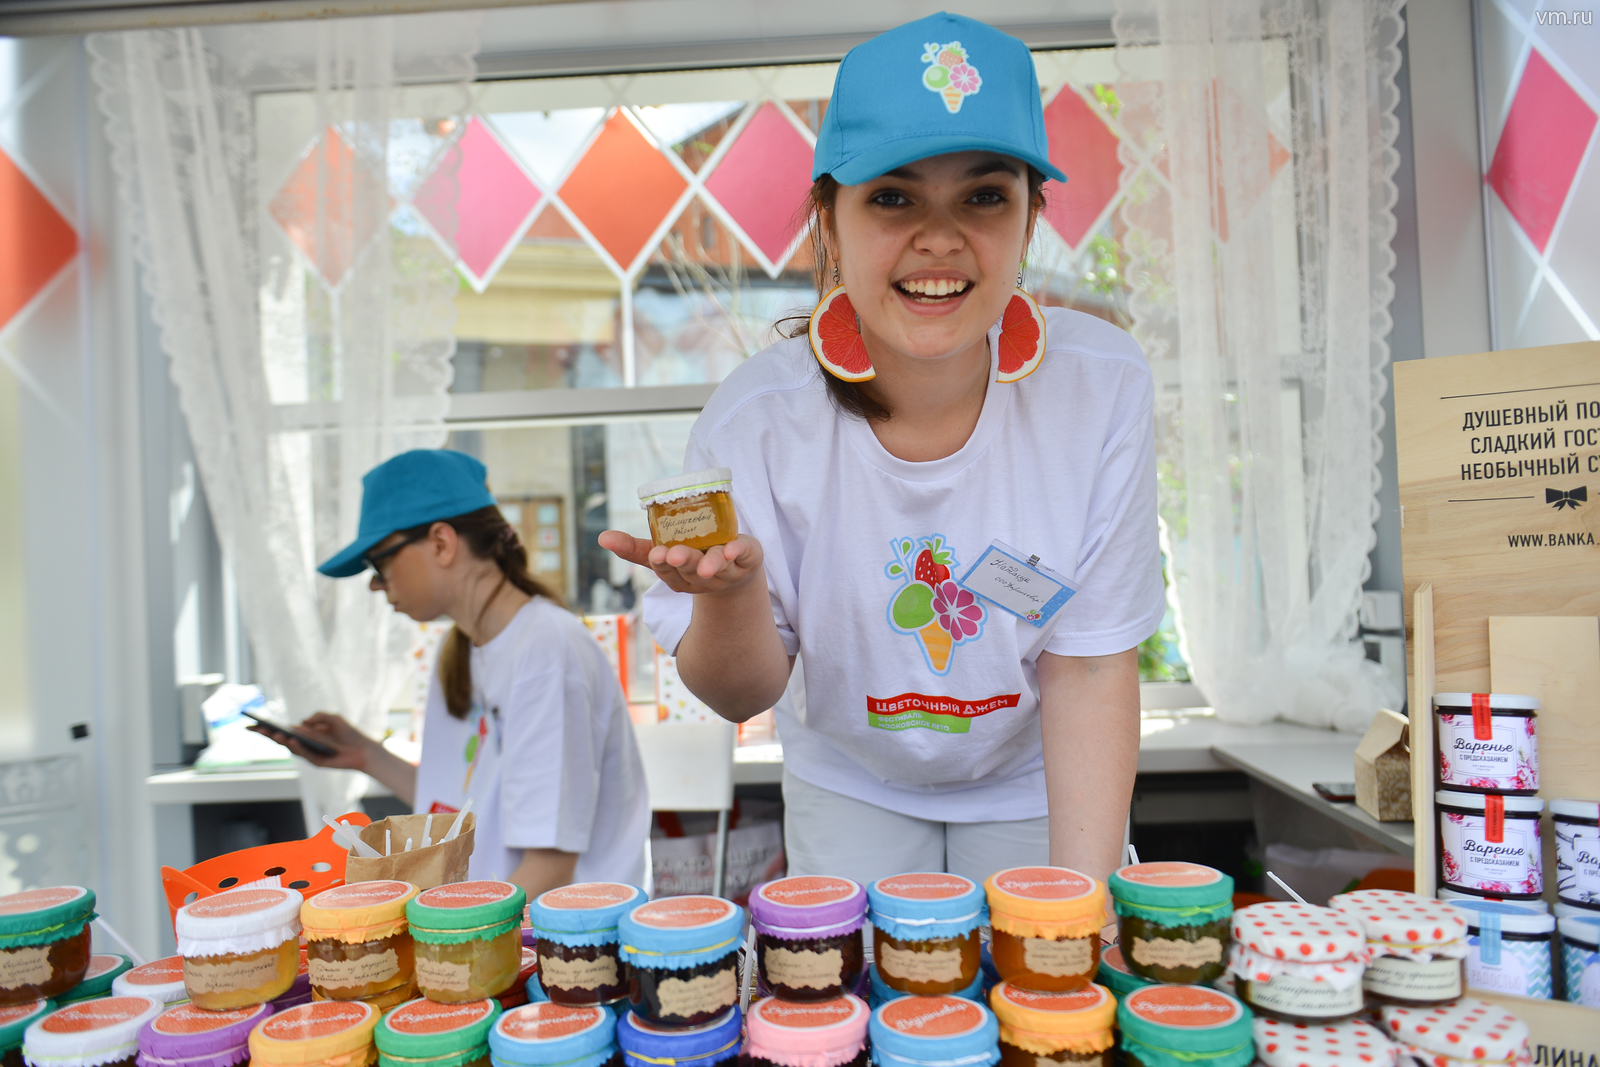 Жители столицы смогут попробовать мороженое с красной икрой и беконом на фестивале «Цветочный джем». Фото: архив, «Вечерняя Москва»